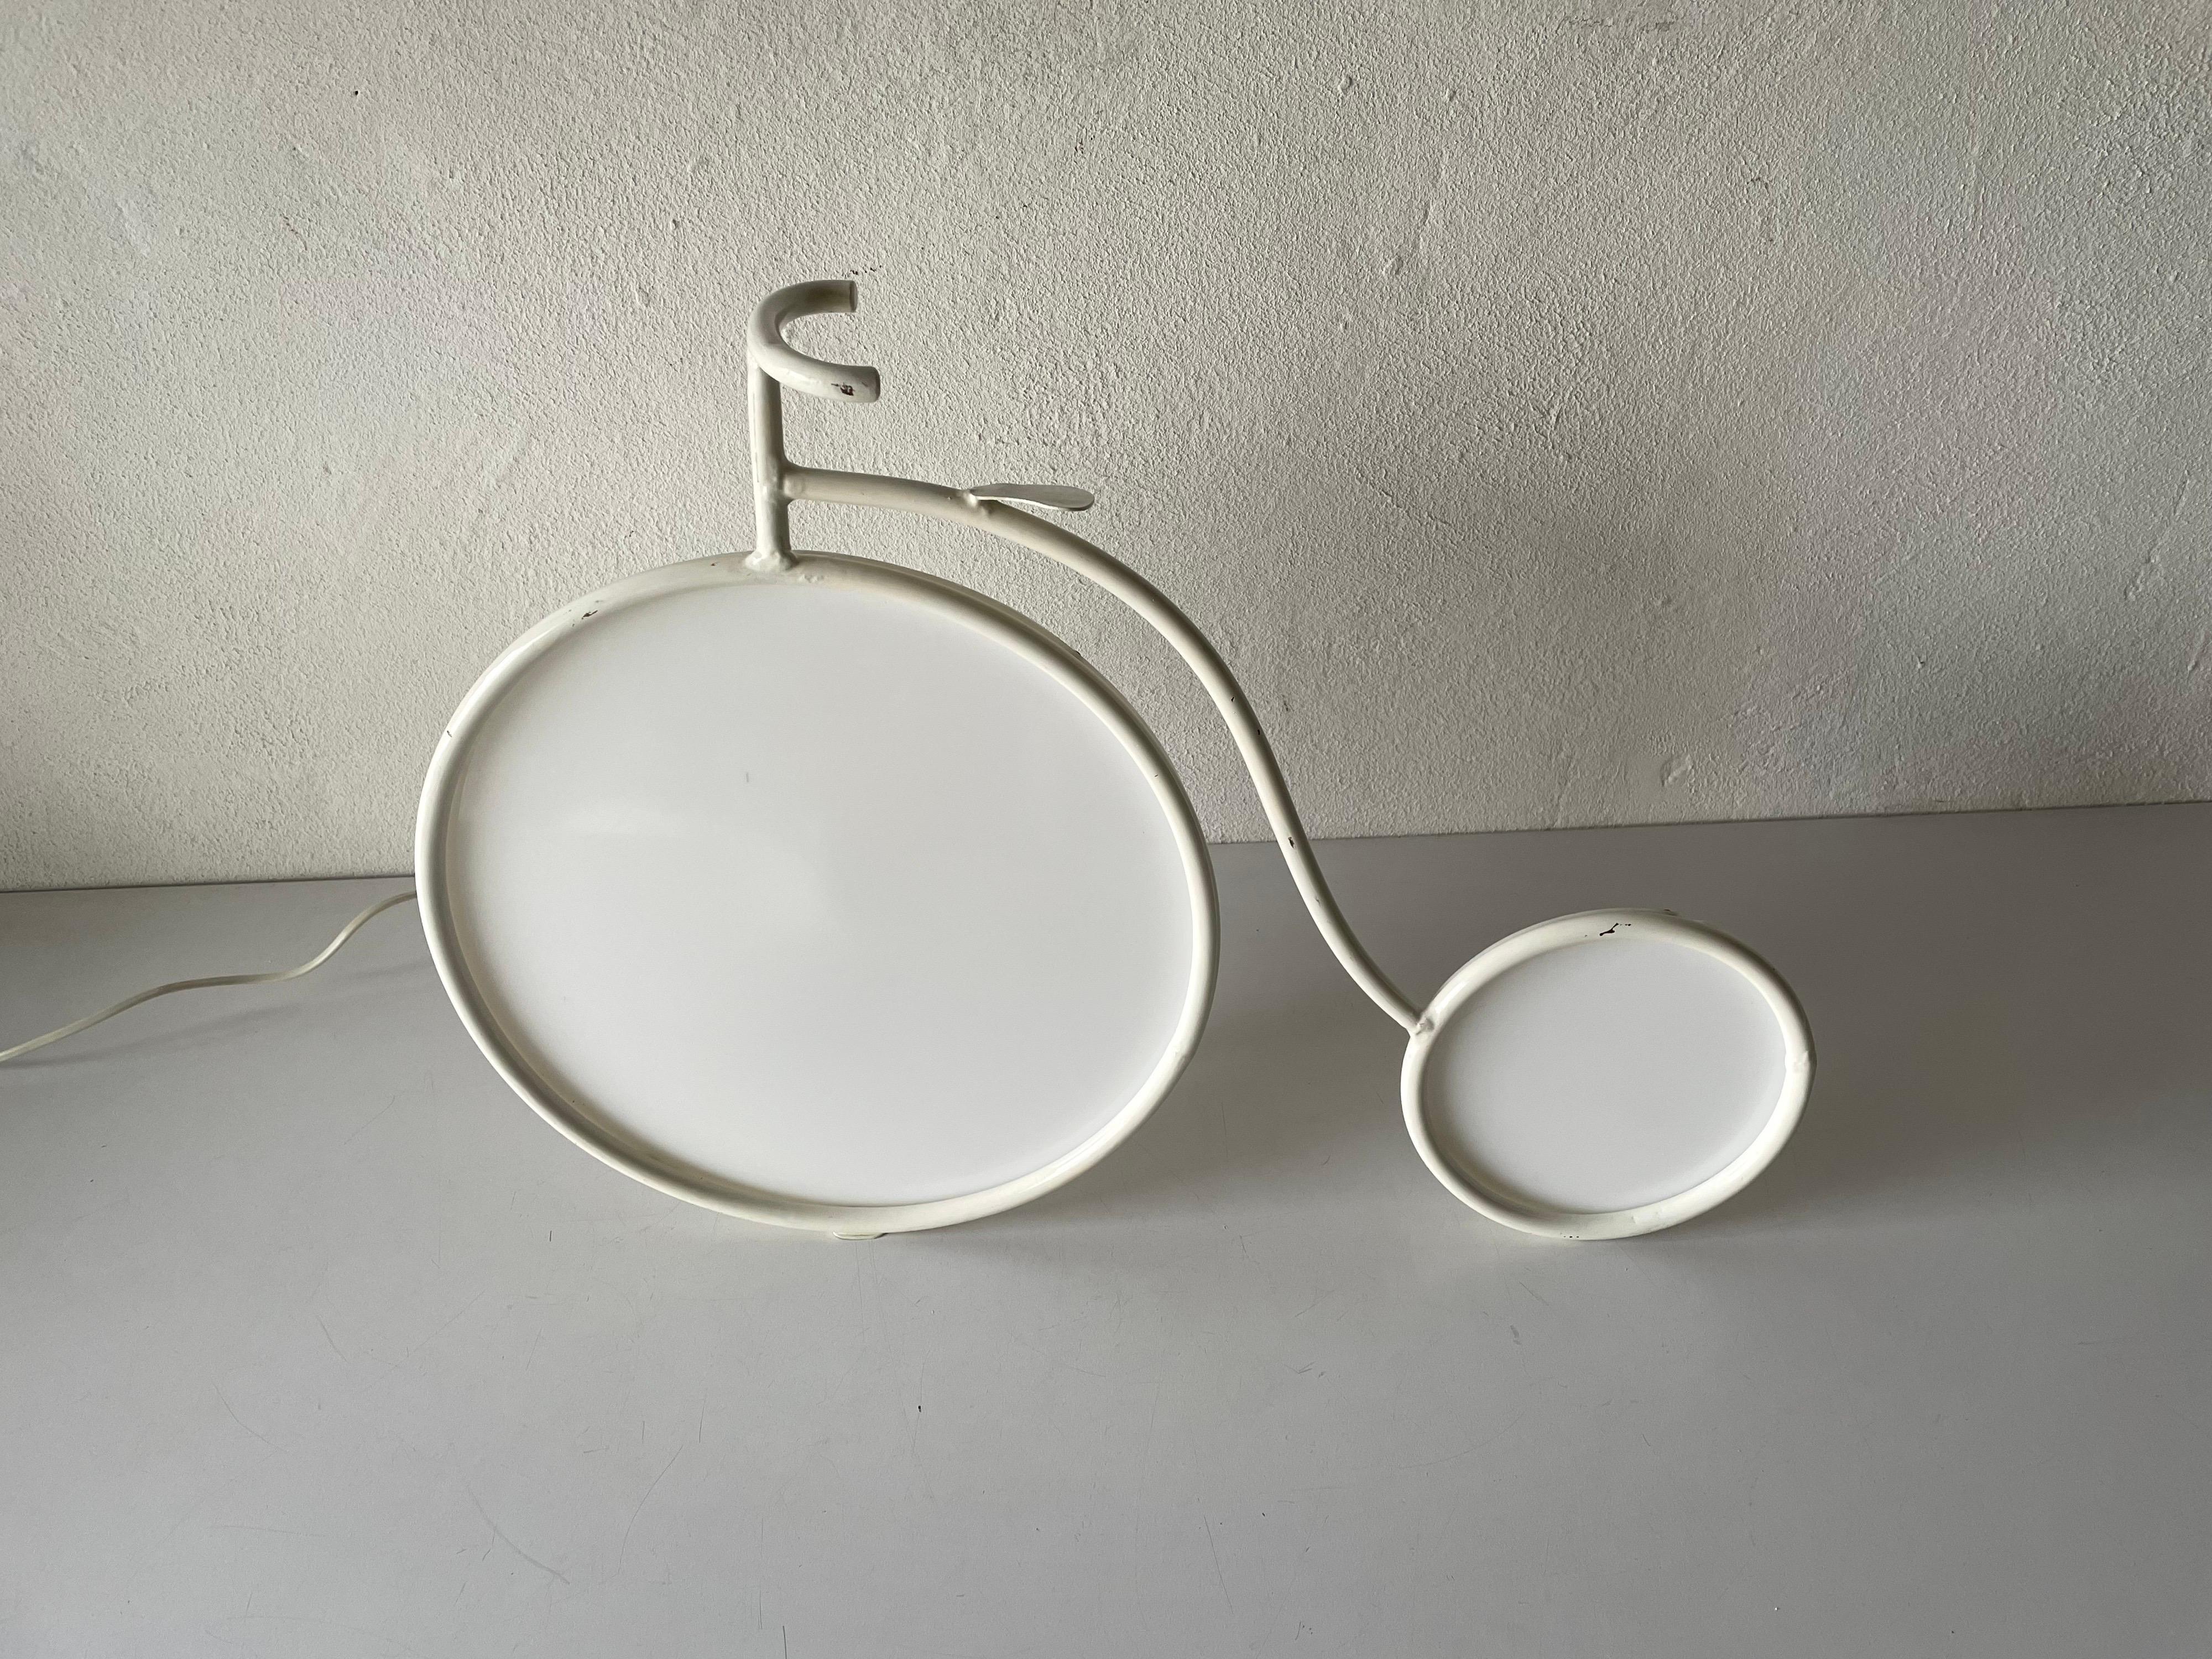 Lampe de table à vélo en métal blanc par Zicoli, 1970 Italie

Grande lampe de bureau très rare
Jantes en plastique.
Très haute qualité.
Entièrement fonctionnel.

Câble et fiche d'origine. Cette lampe est adaptée à la prise de courant de l'UE.